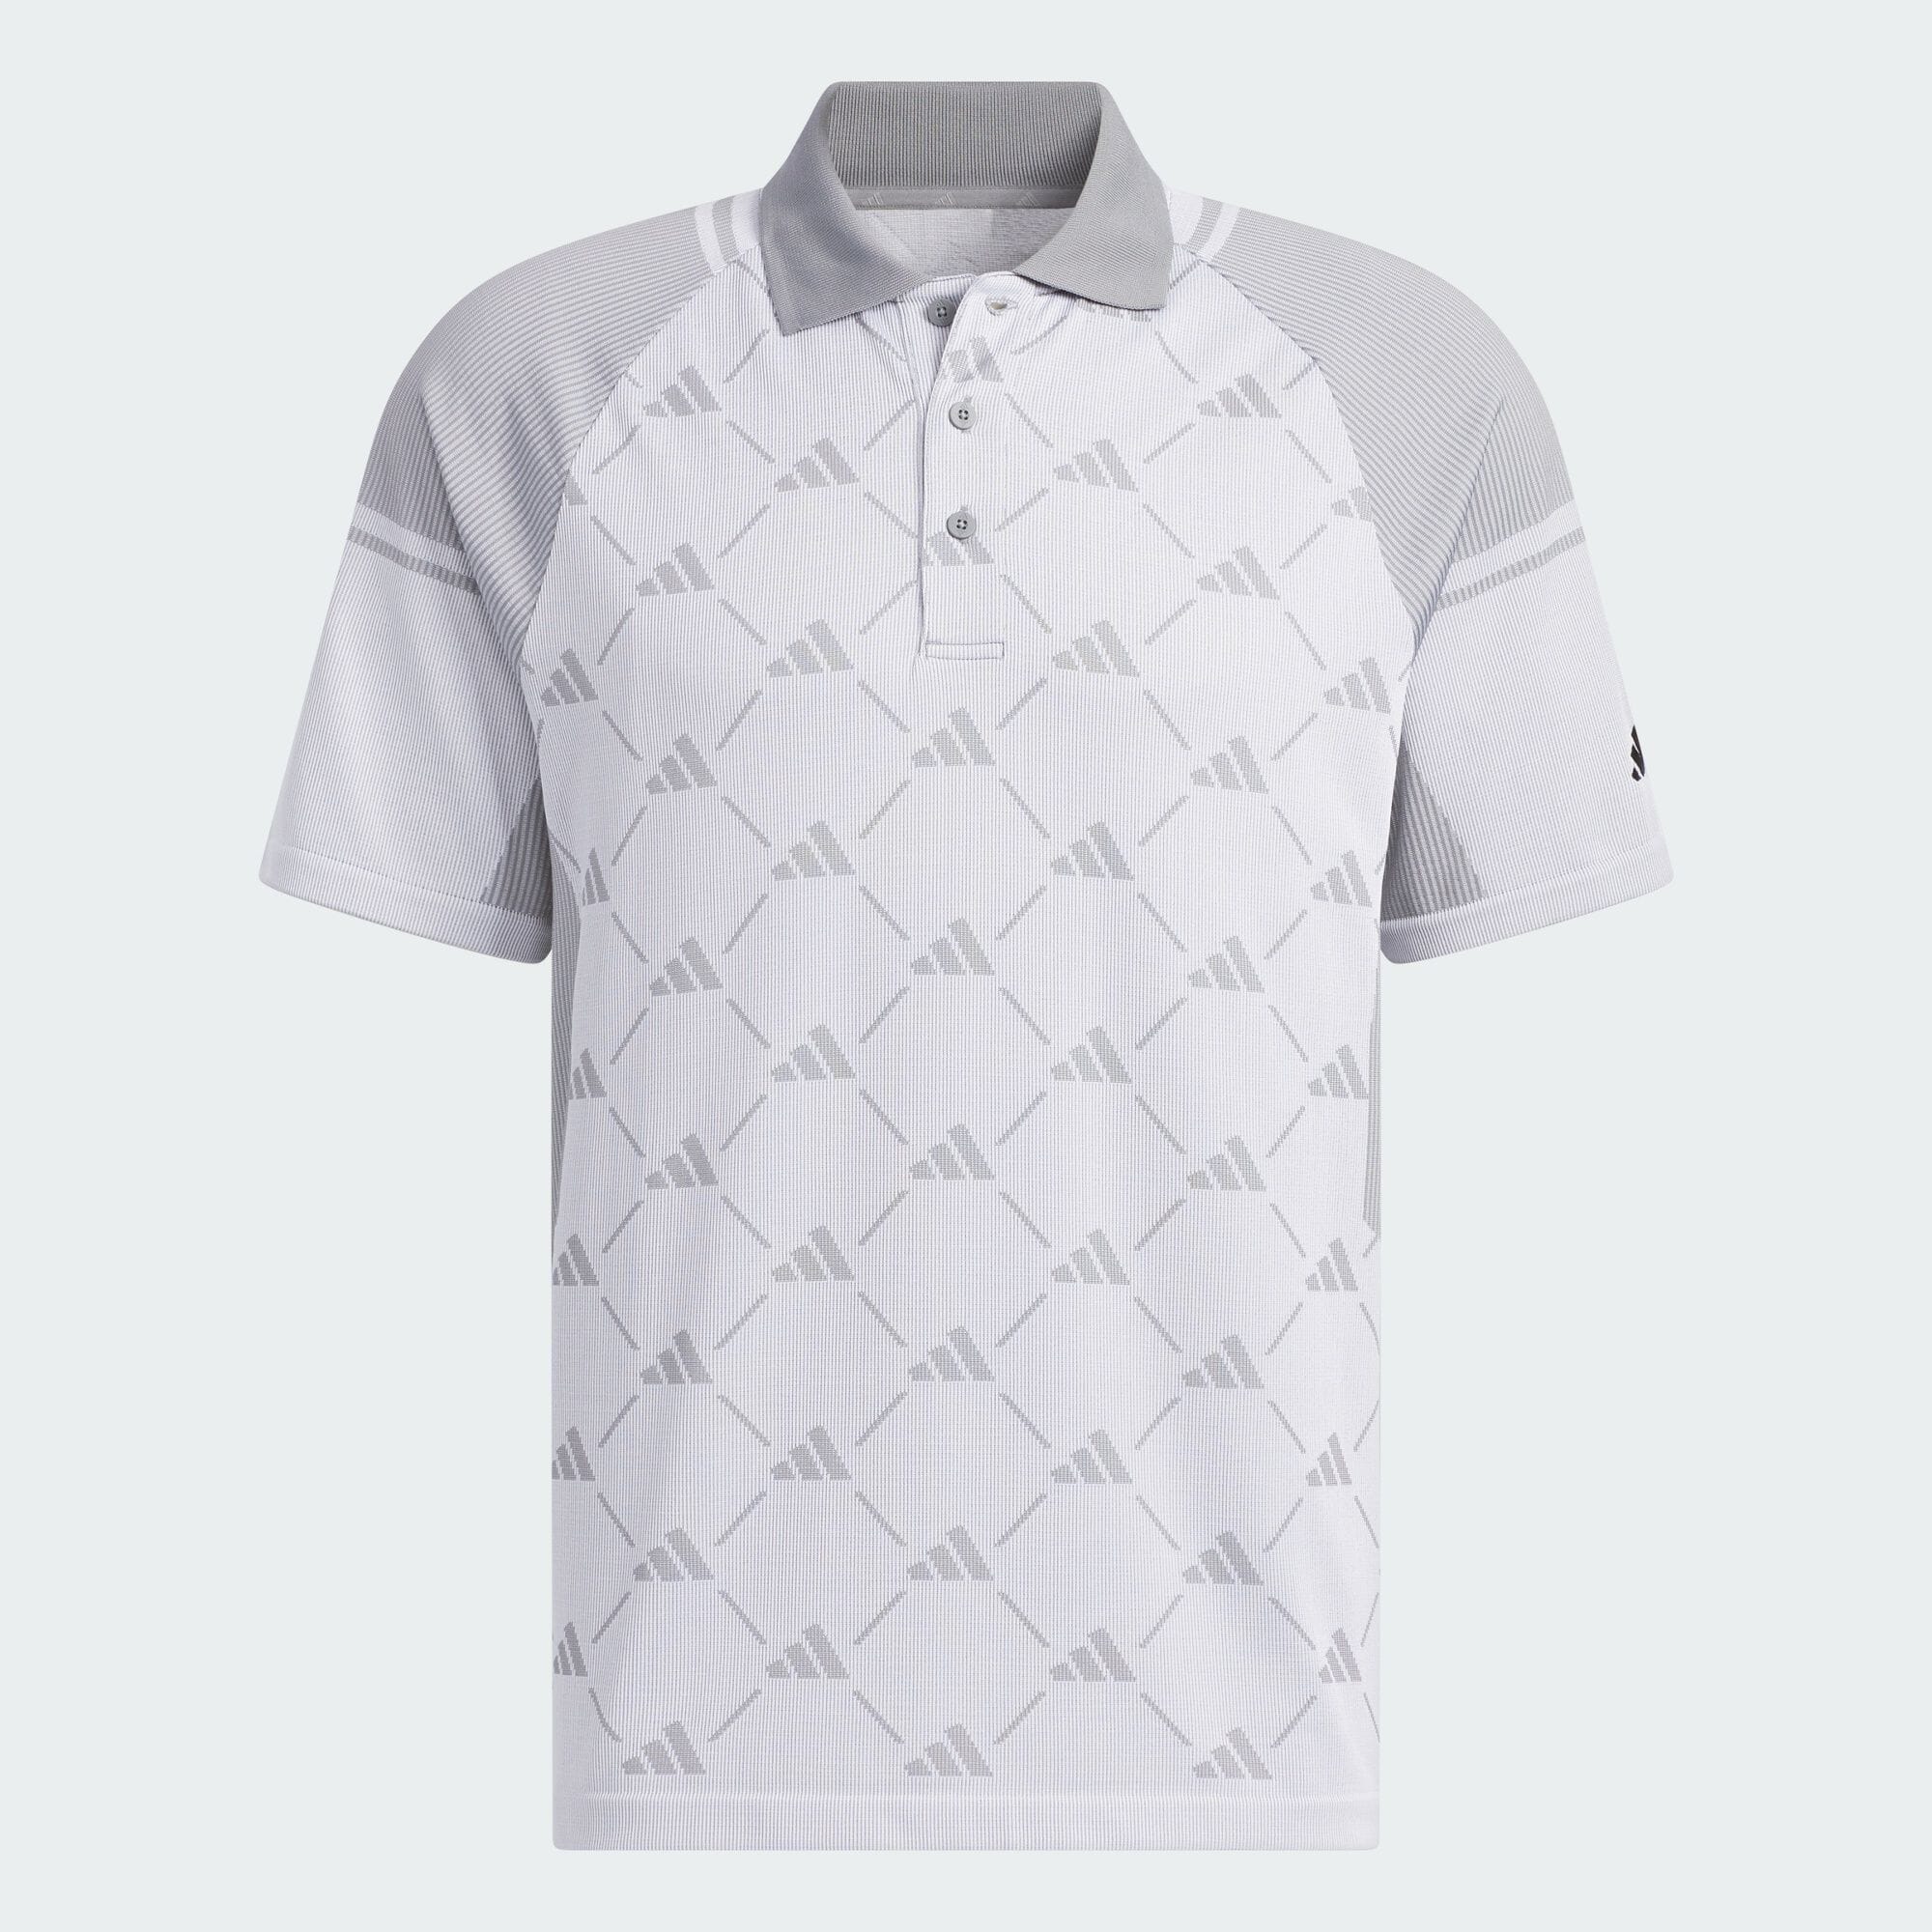 PRIMEKNIT サイドシームレス モノグラム 半袖ポロシャツ メンズ ゴルフ